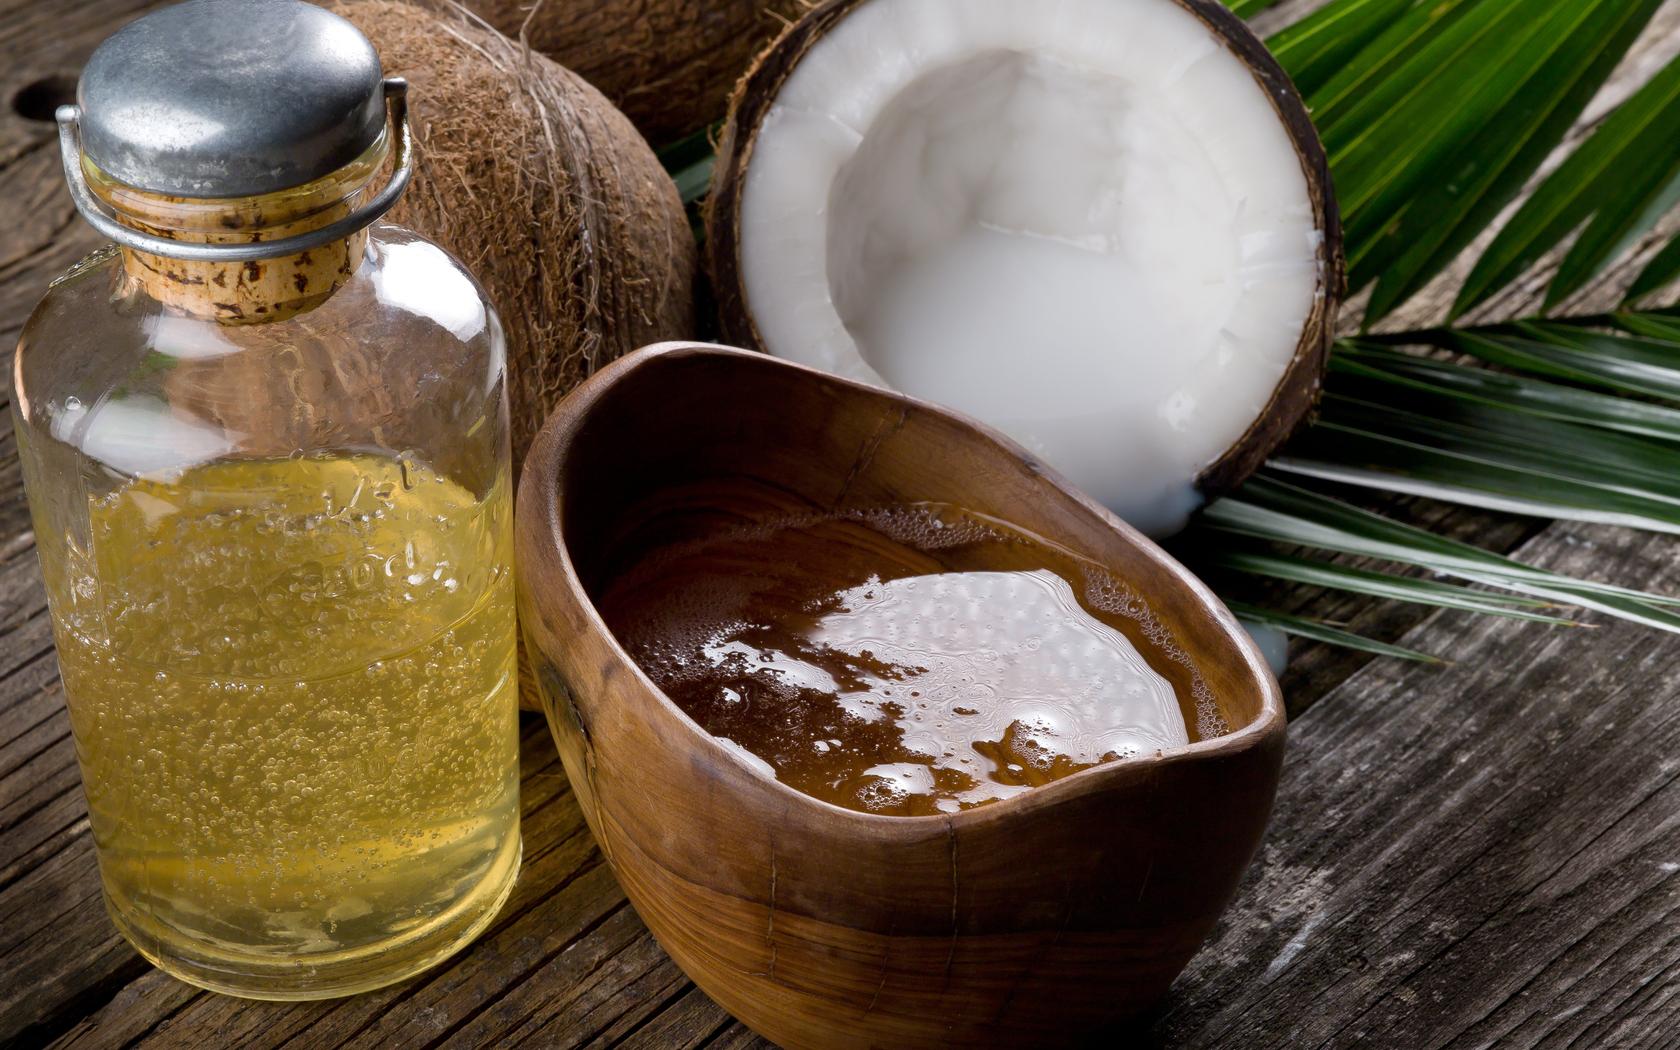 Ce uleiuri pot fi folosite pentru îngrijirea pielii: 4 variante ideale